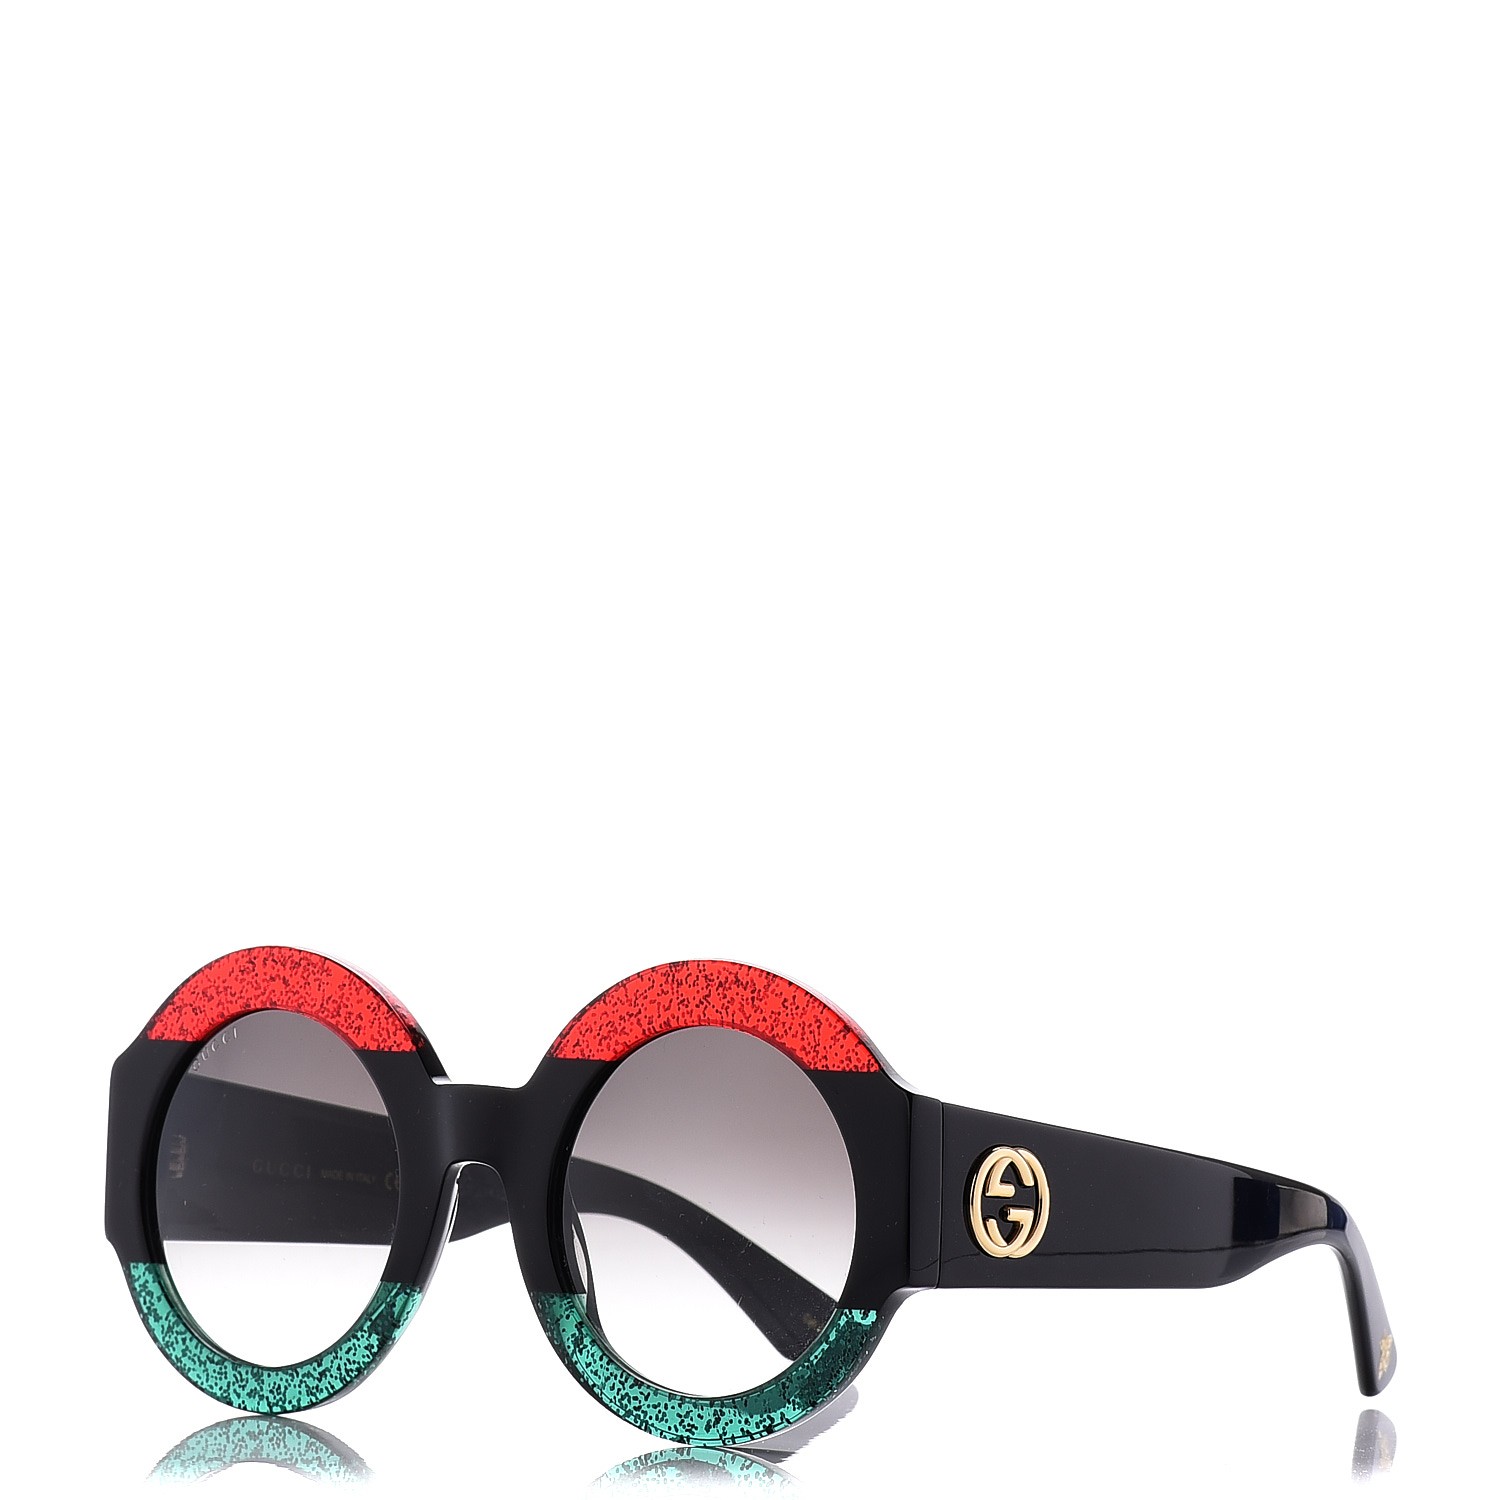 red black green gucci sunglasses